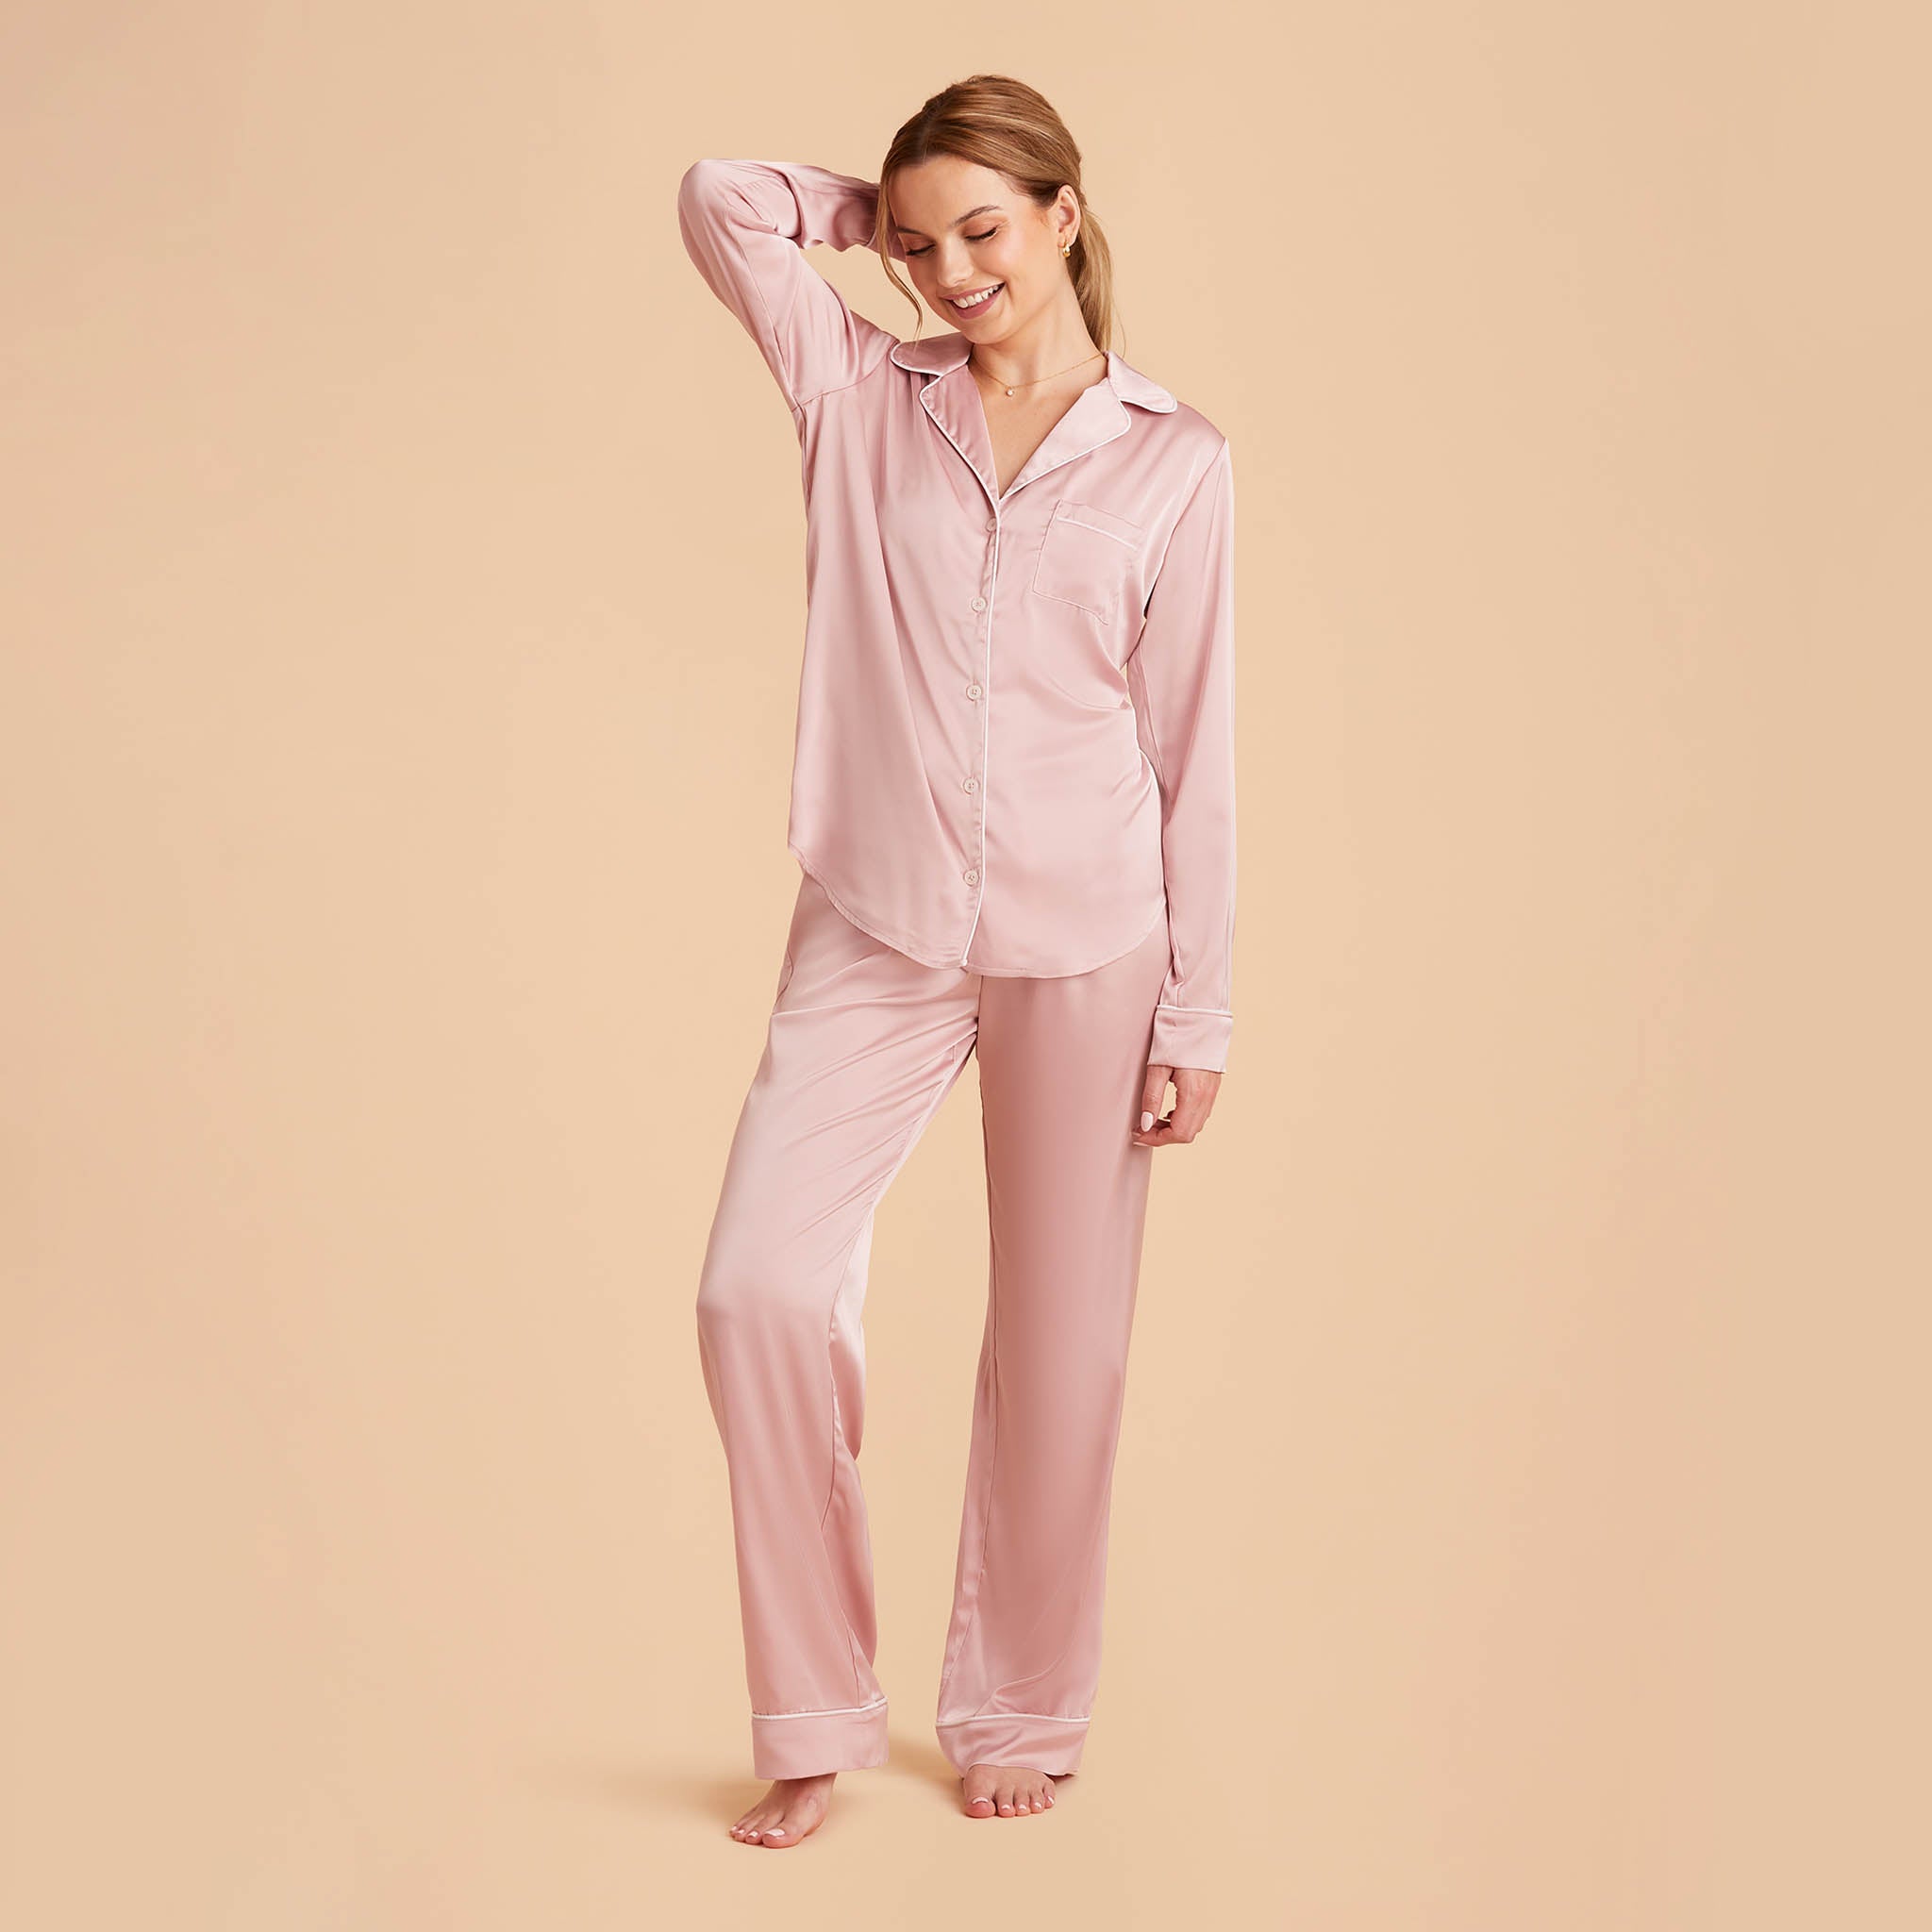 Silk Long Sleeve Pajama with customization, bridesmaid pajamas gifts